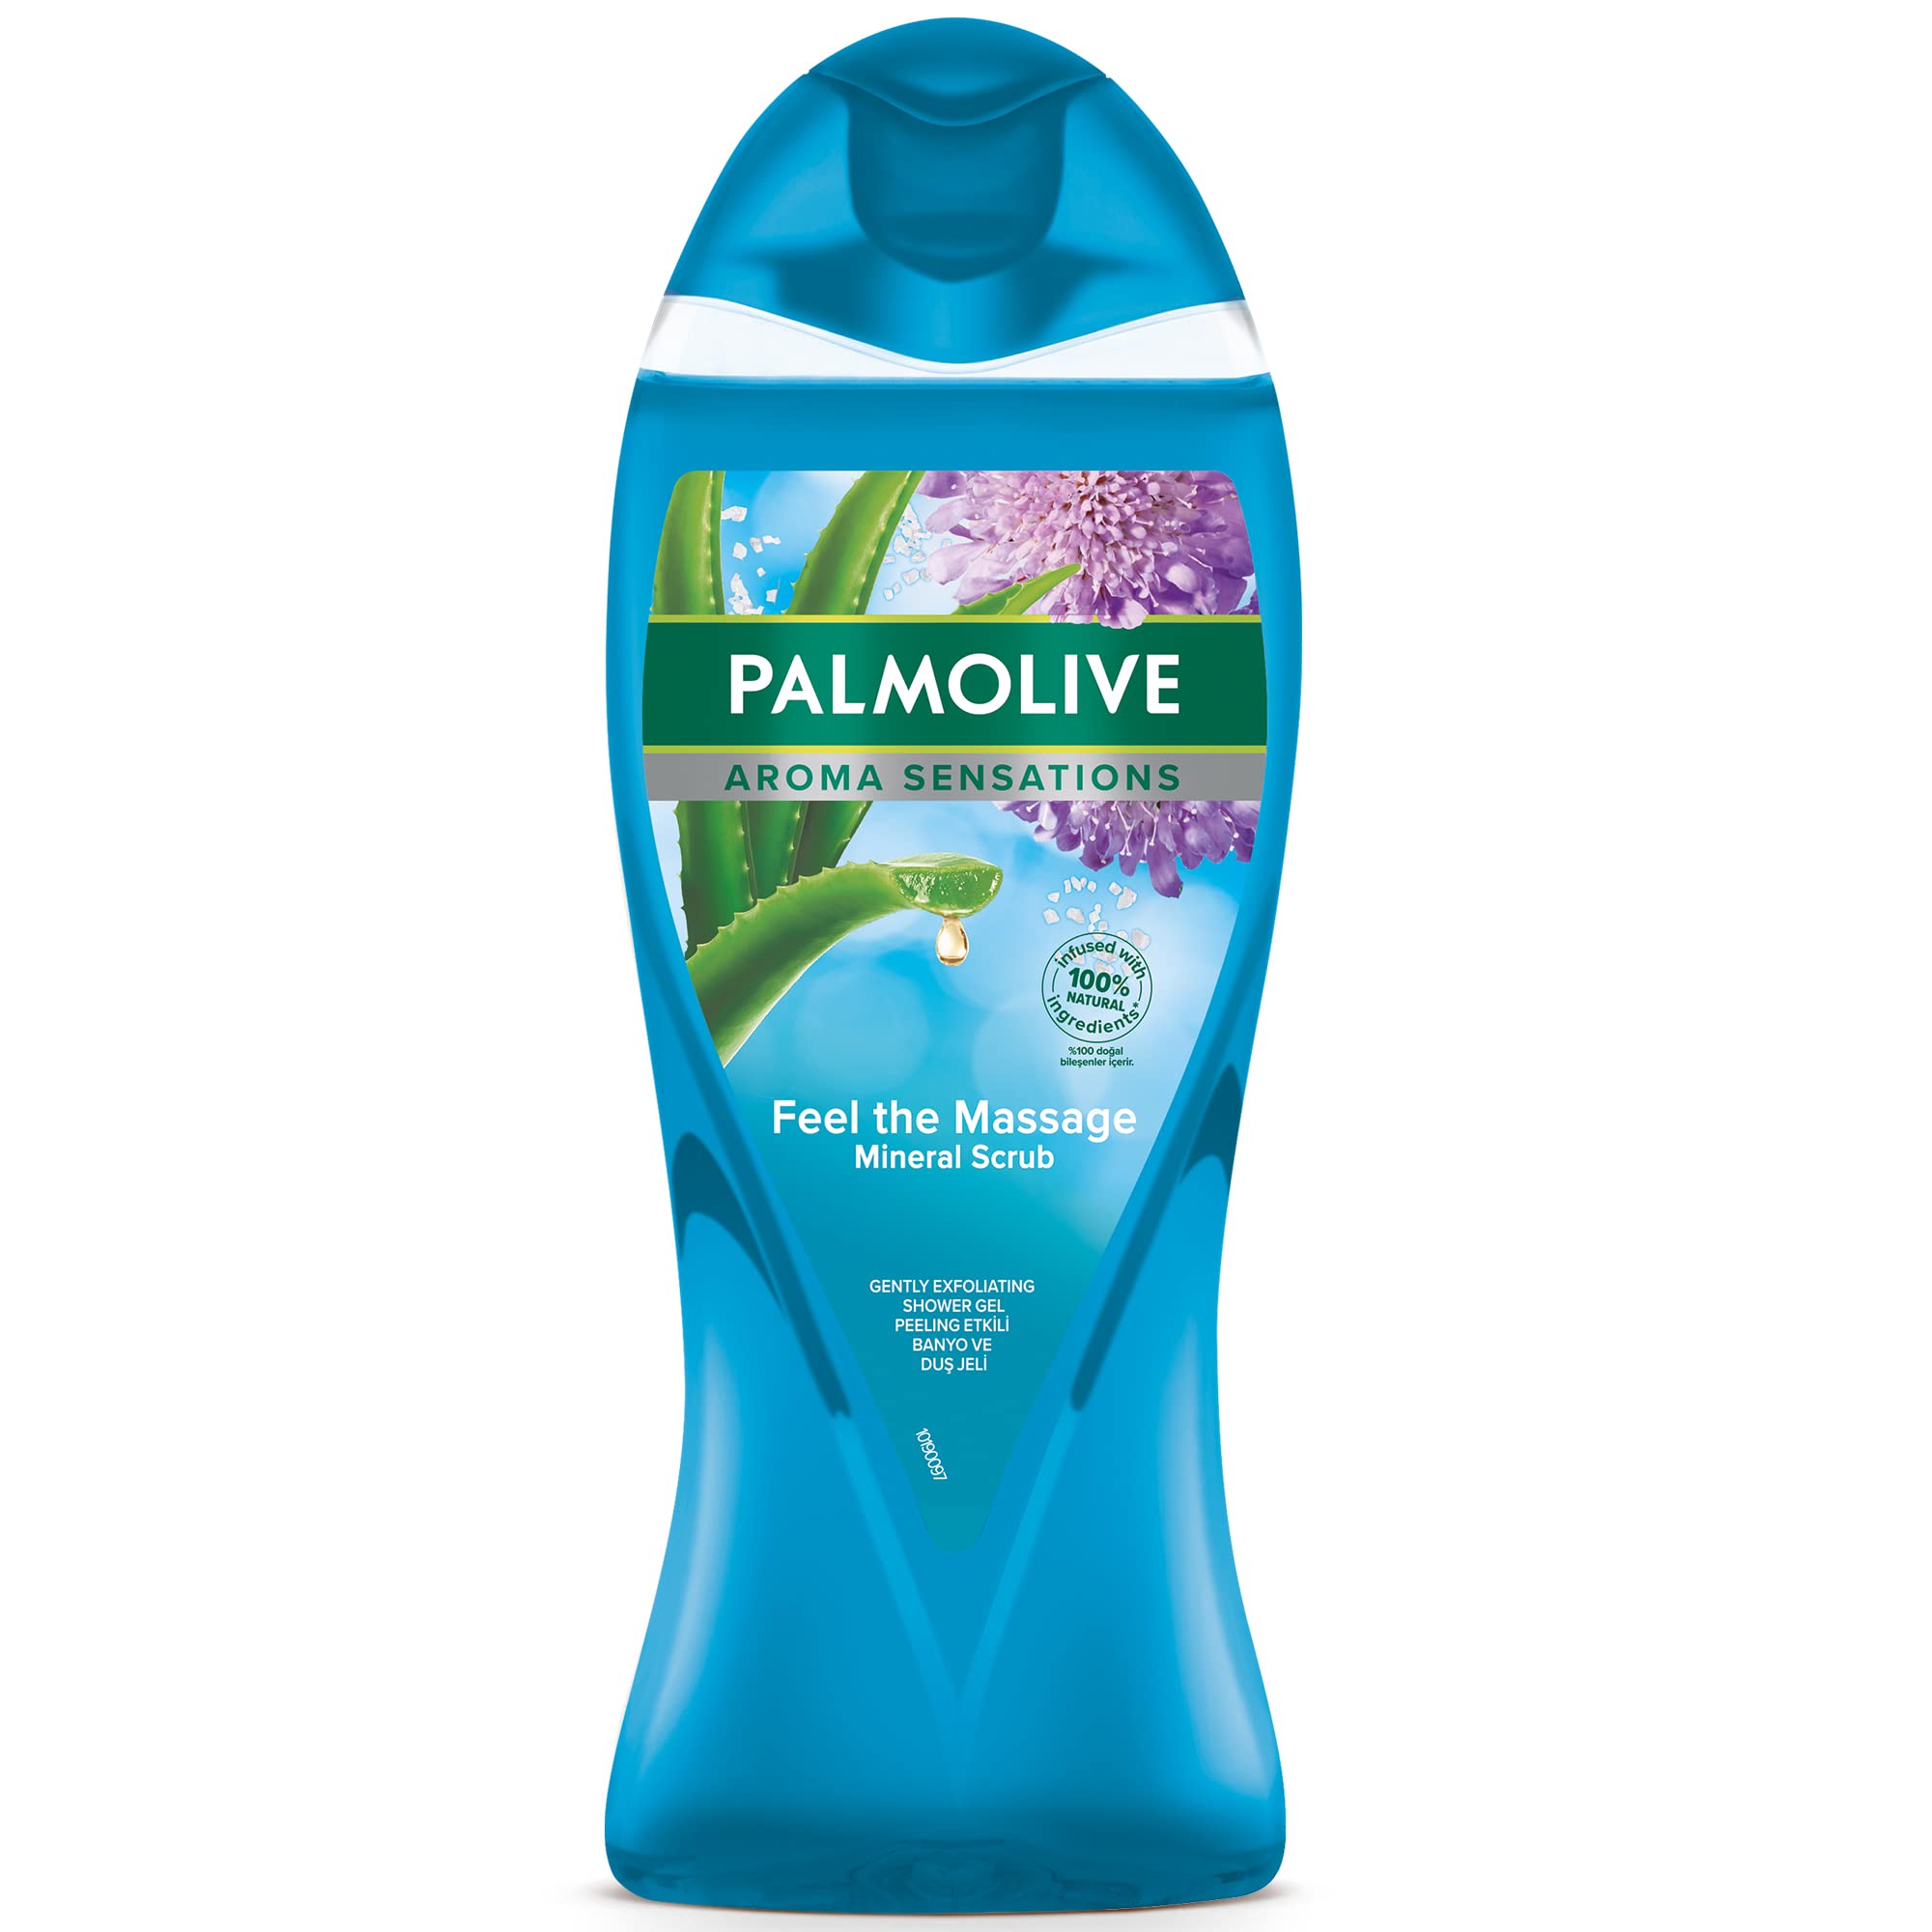 Palmolive İsrail malı mı Palmolive Türk malı mı Palmolive hangi ülkenin ürünü (1)